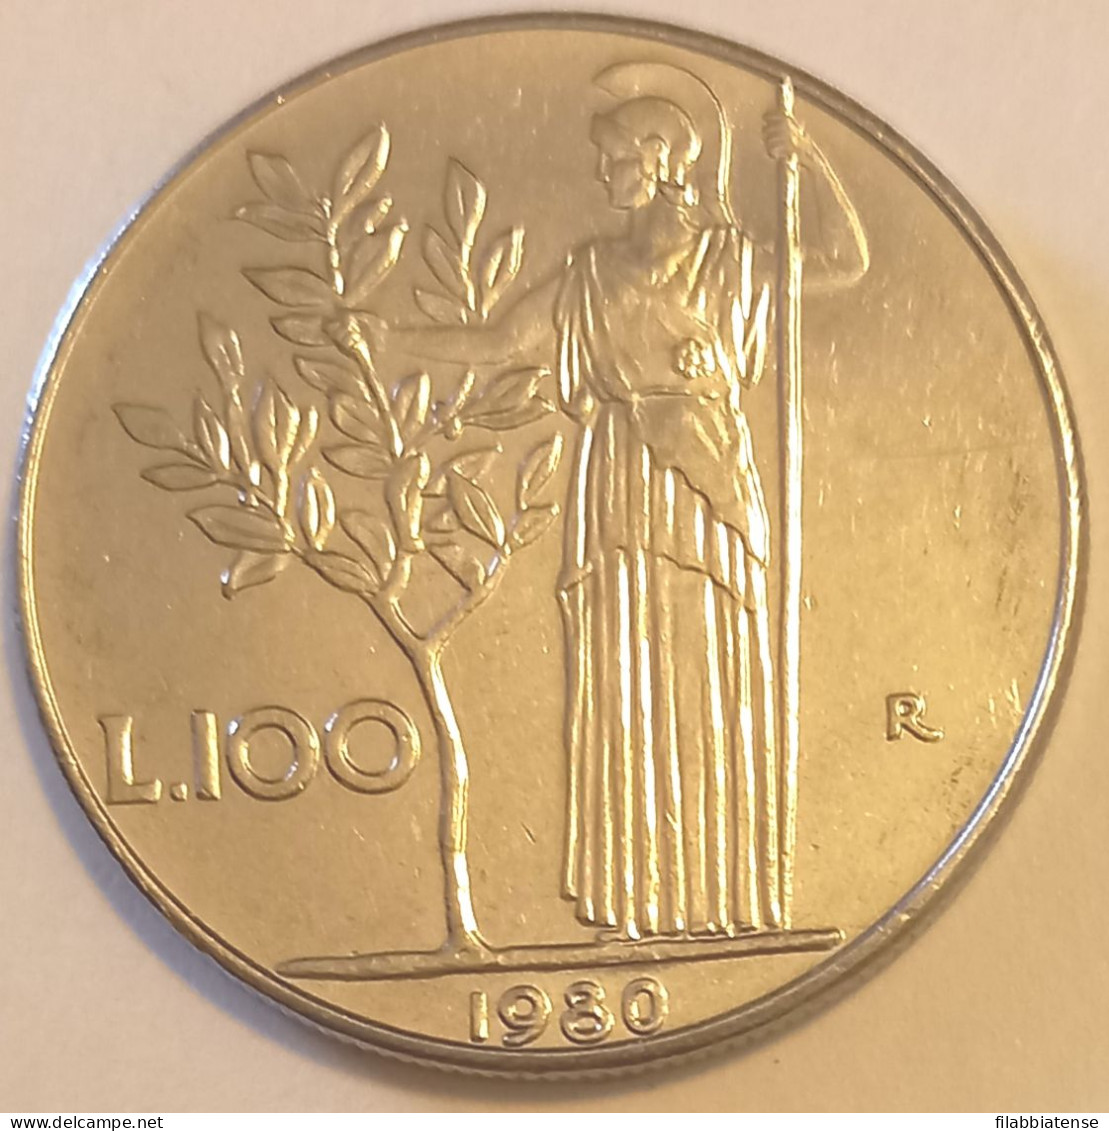 1980 - Italia 100 Lire   ------- - 100 Liras